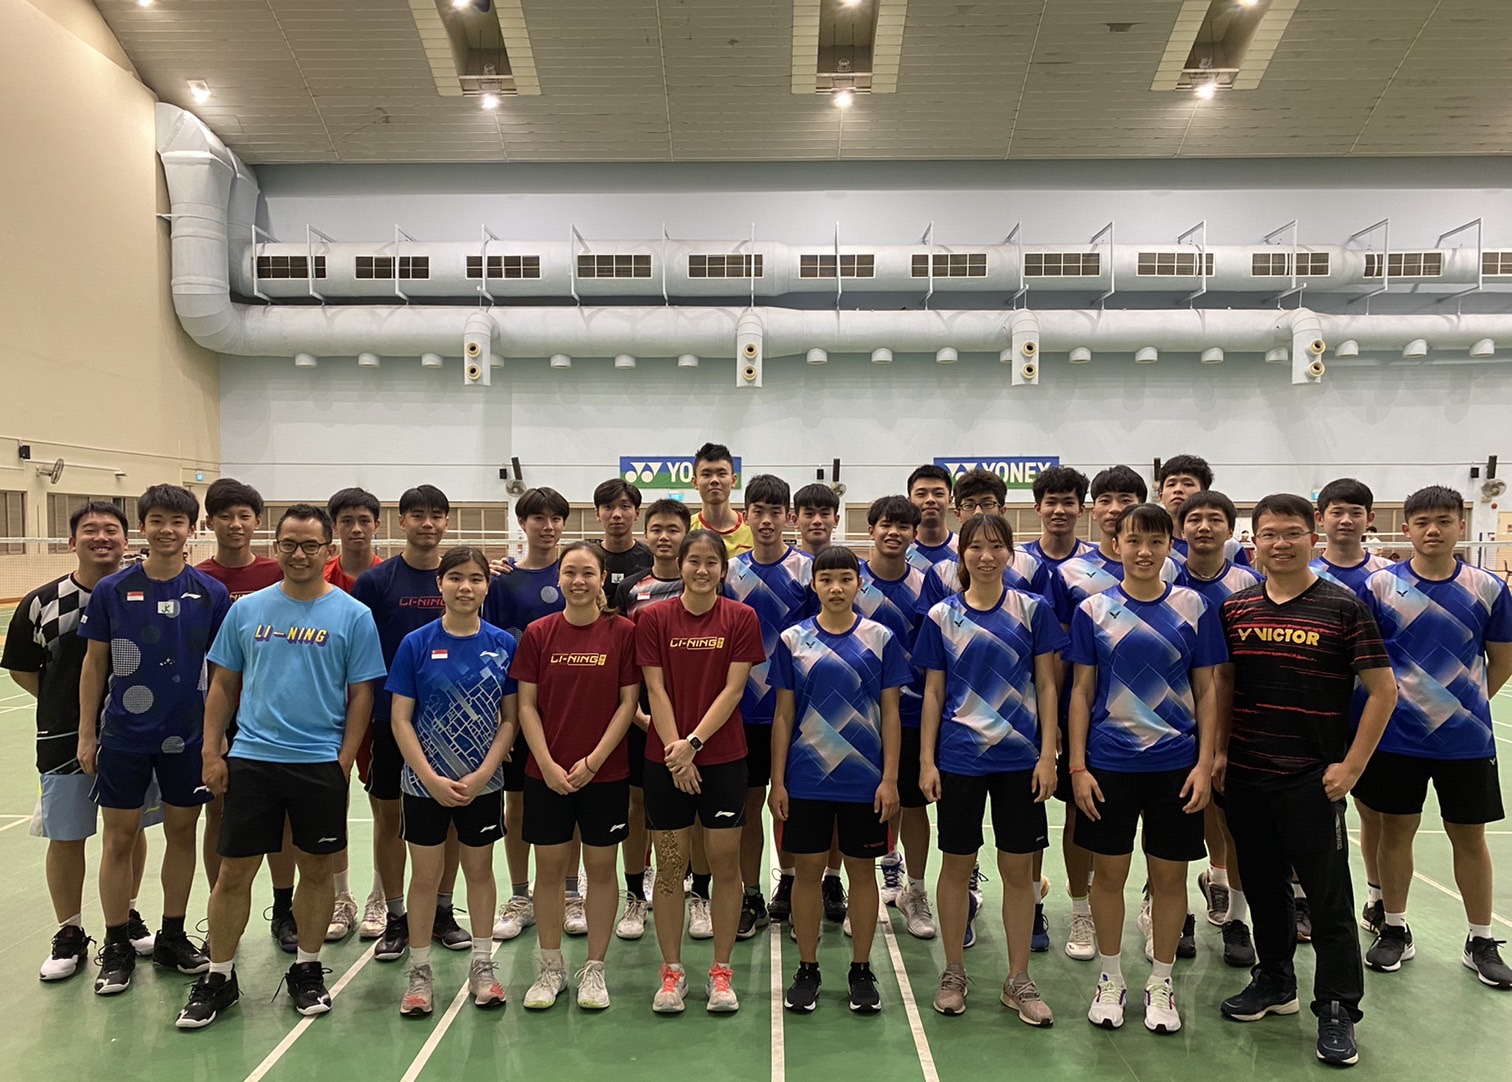 嘉義大學羽球隊與新加坡的教練和運動員在訓練場館合影。官方提供